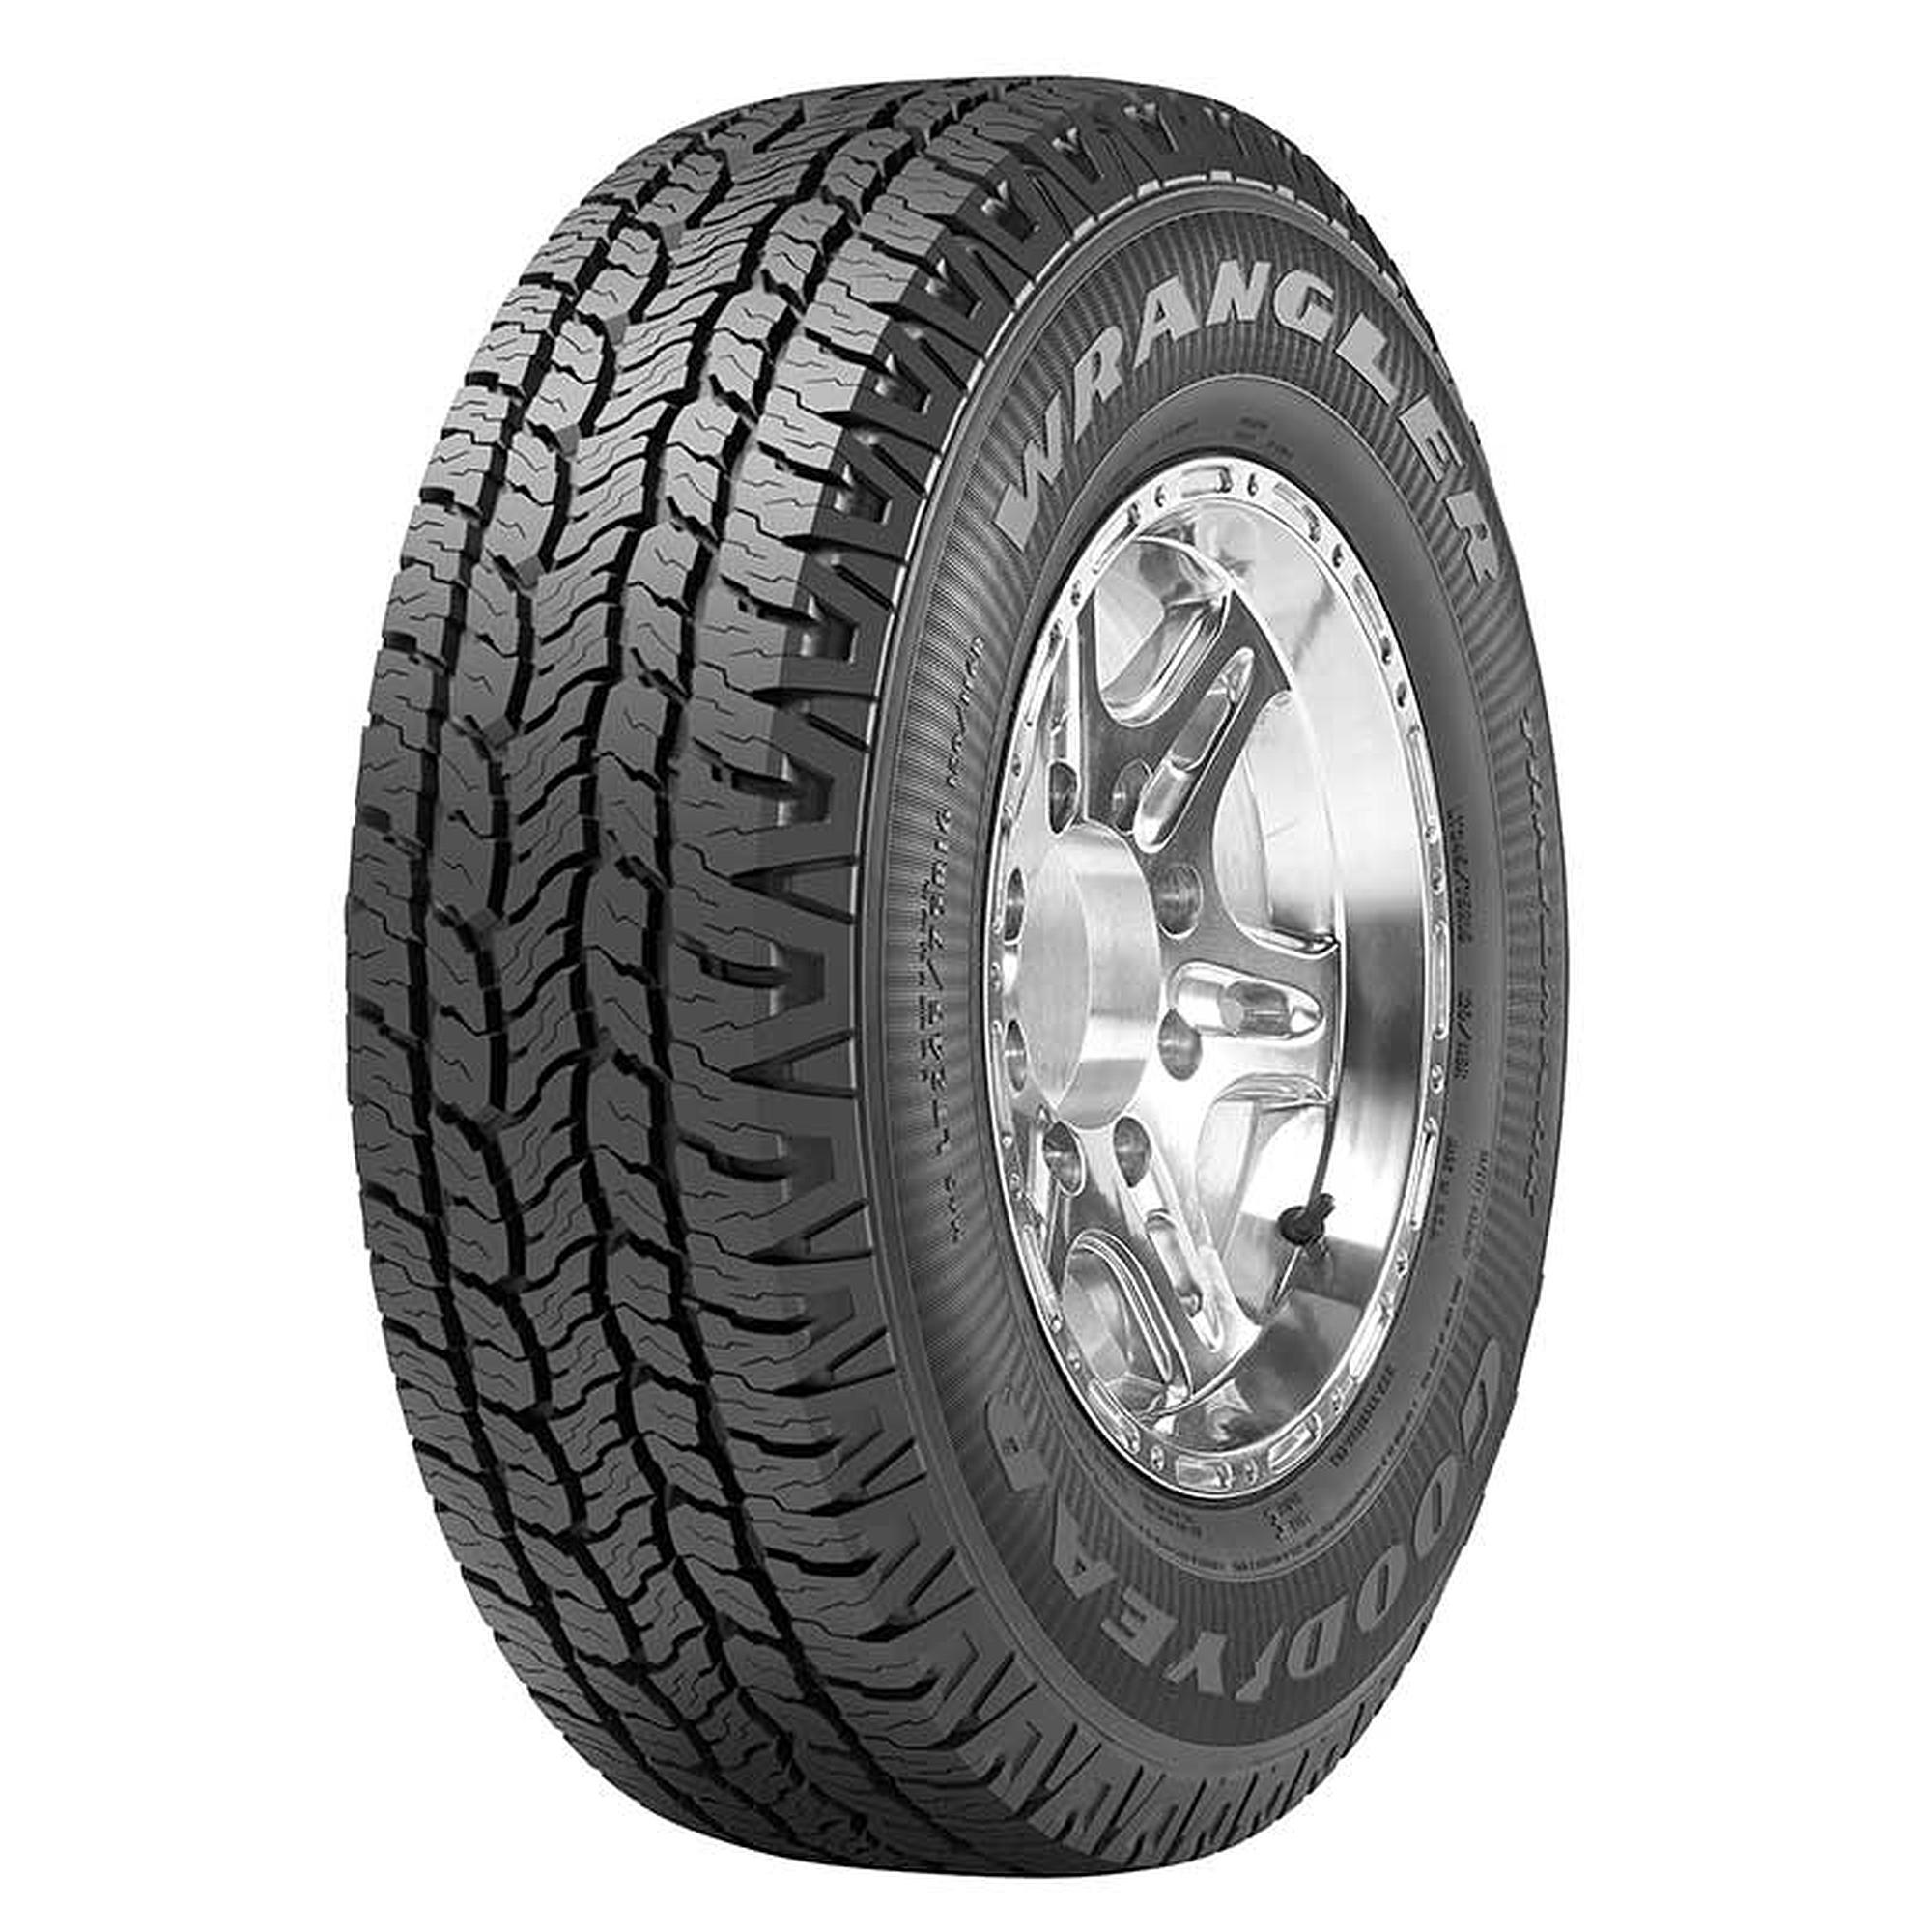 Goodyear Wrangler Trailmark All Season 235/70R16 104T Light Truck Tire - image 1 of 4